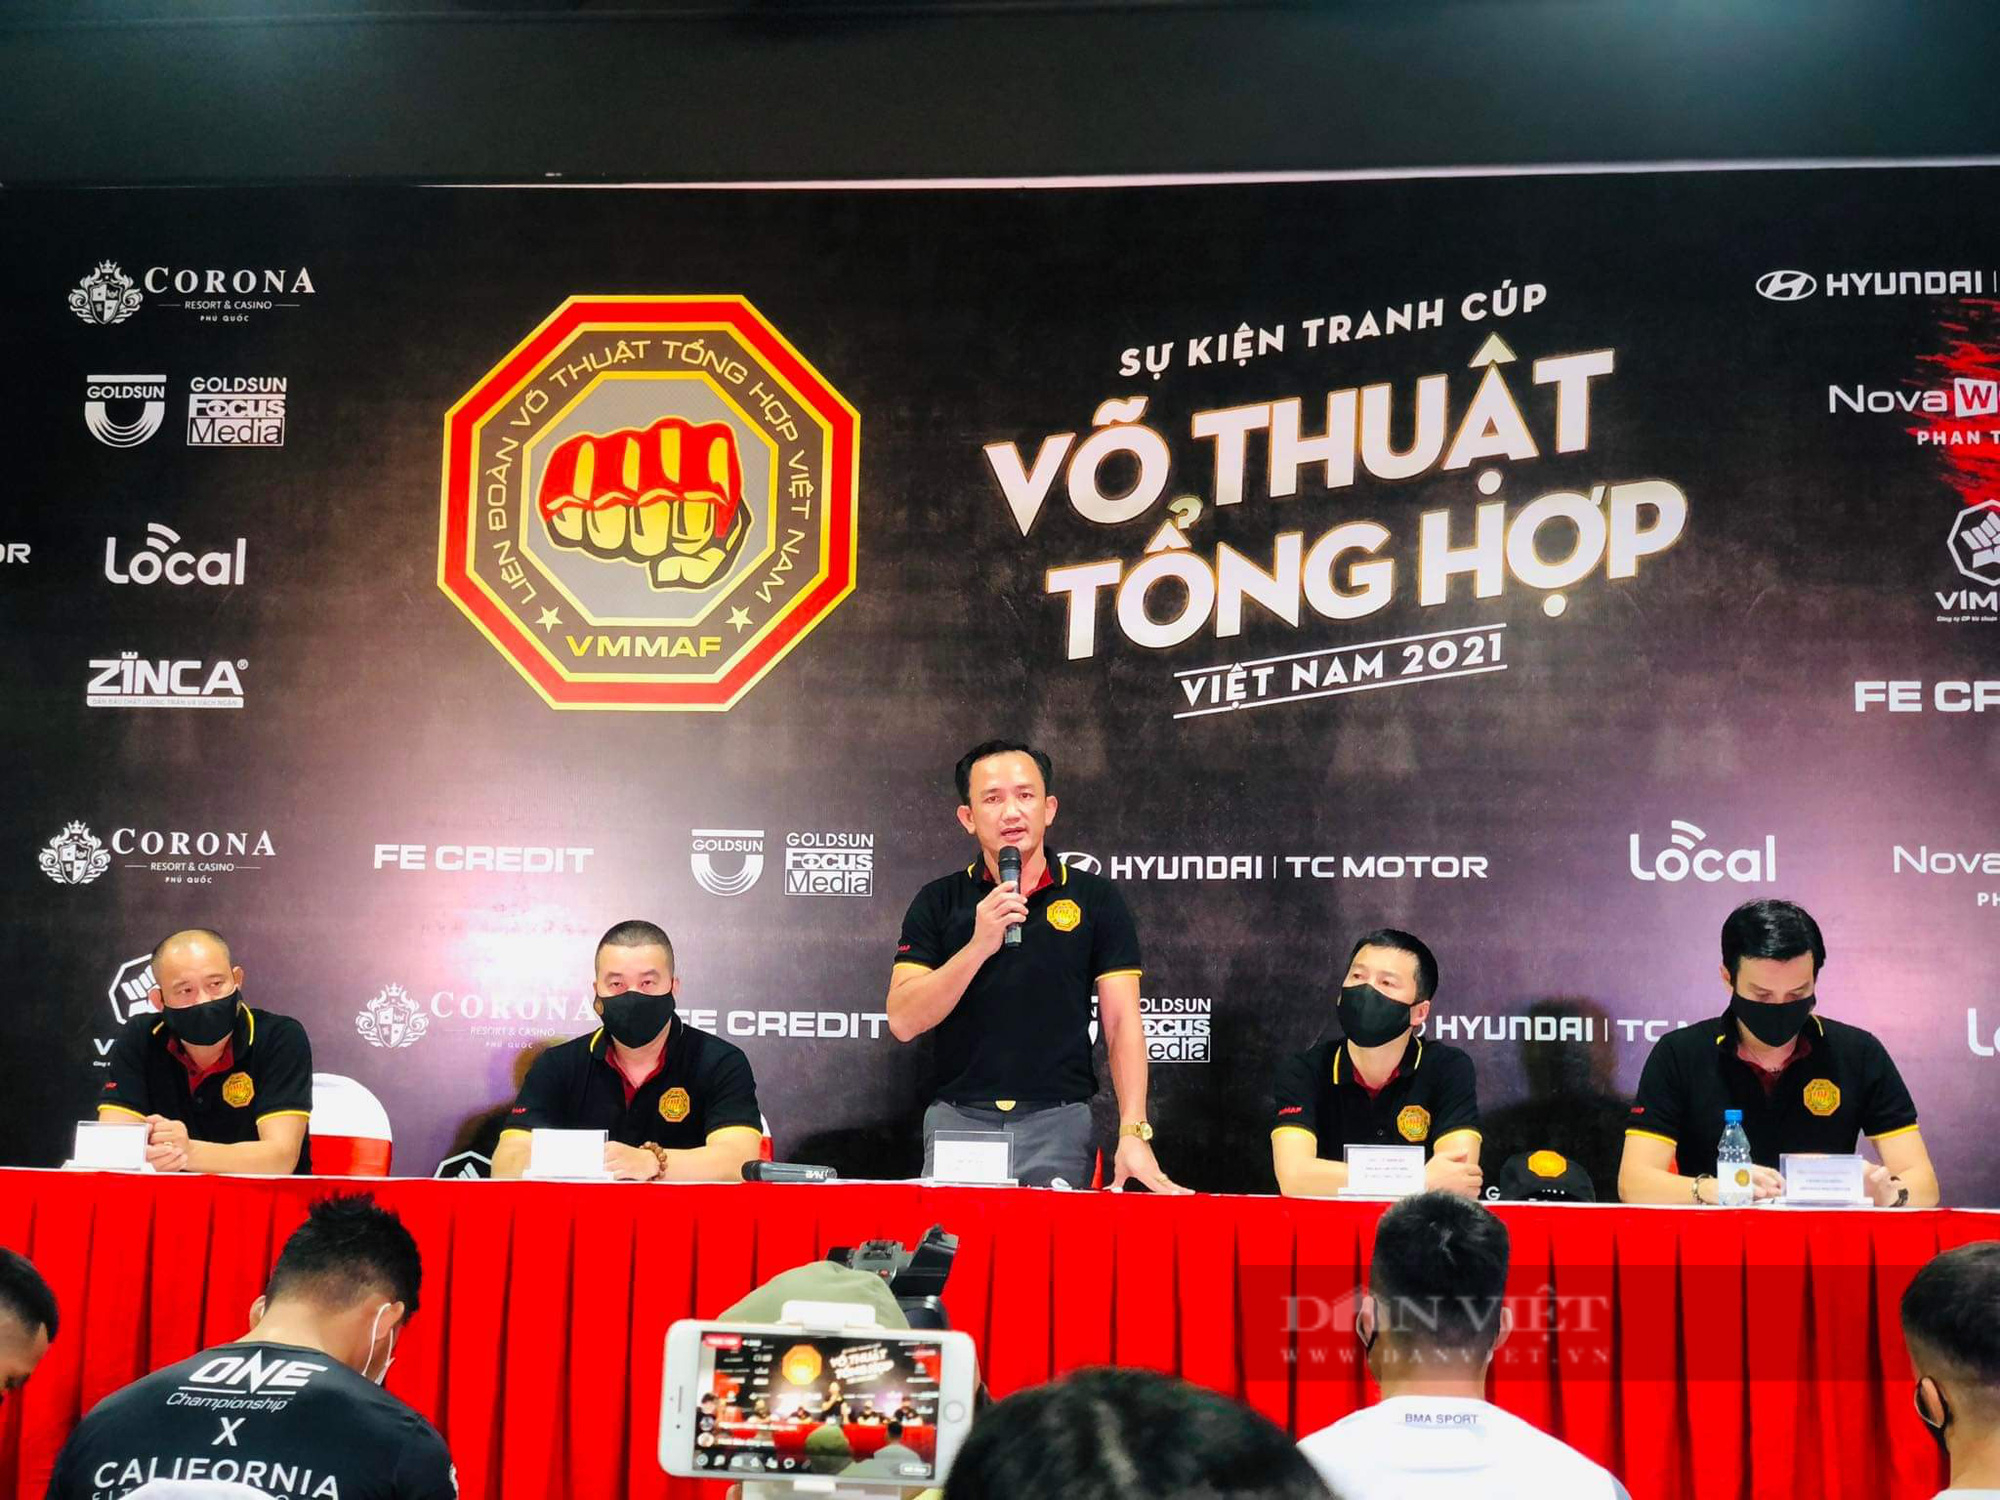 Sắp diễn ra giải đấu võ thuật tổng hợp MMA đầu tiên tại Việt Nam - Ảnh 1.